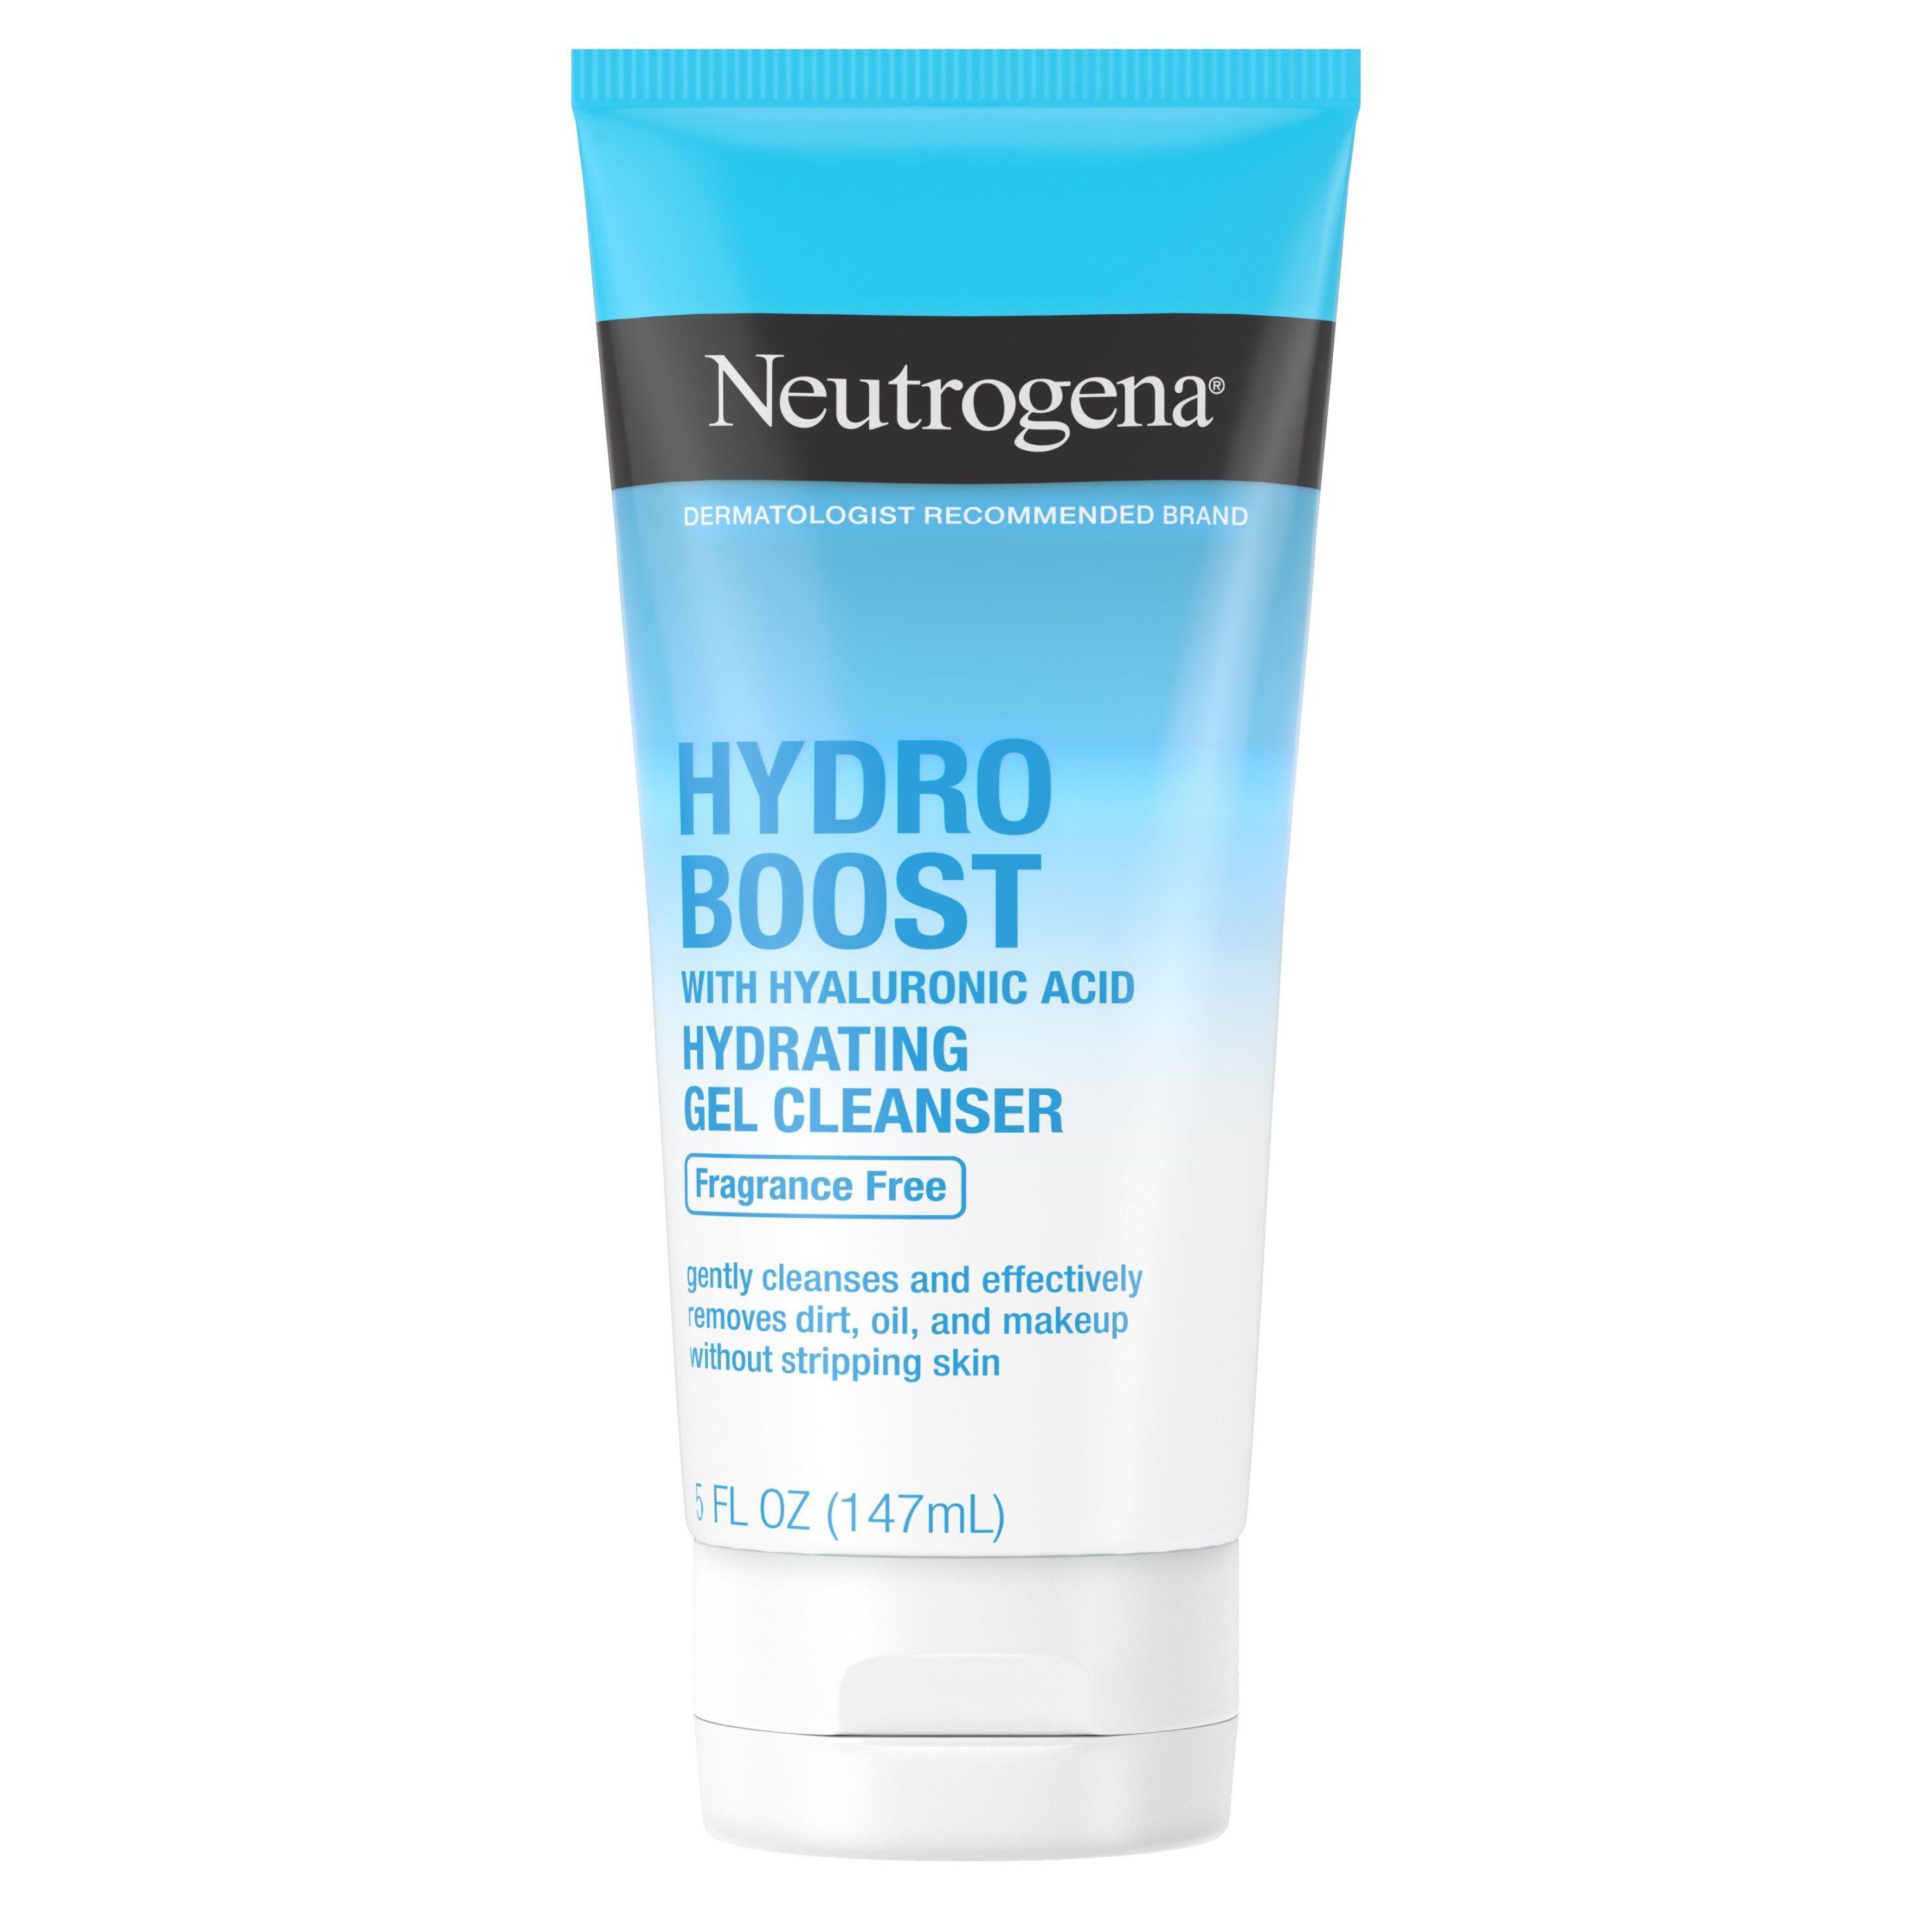 Neutrogena Hydro Boost Fragrance Free Foaming Face Wash, 5 fl. oz